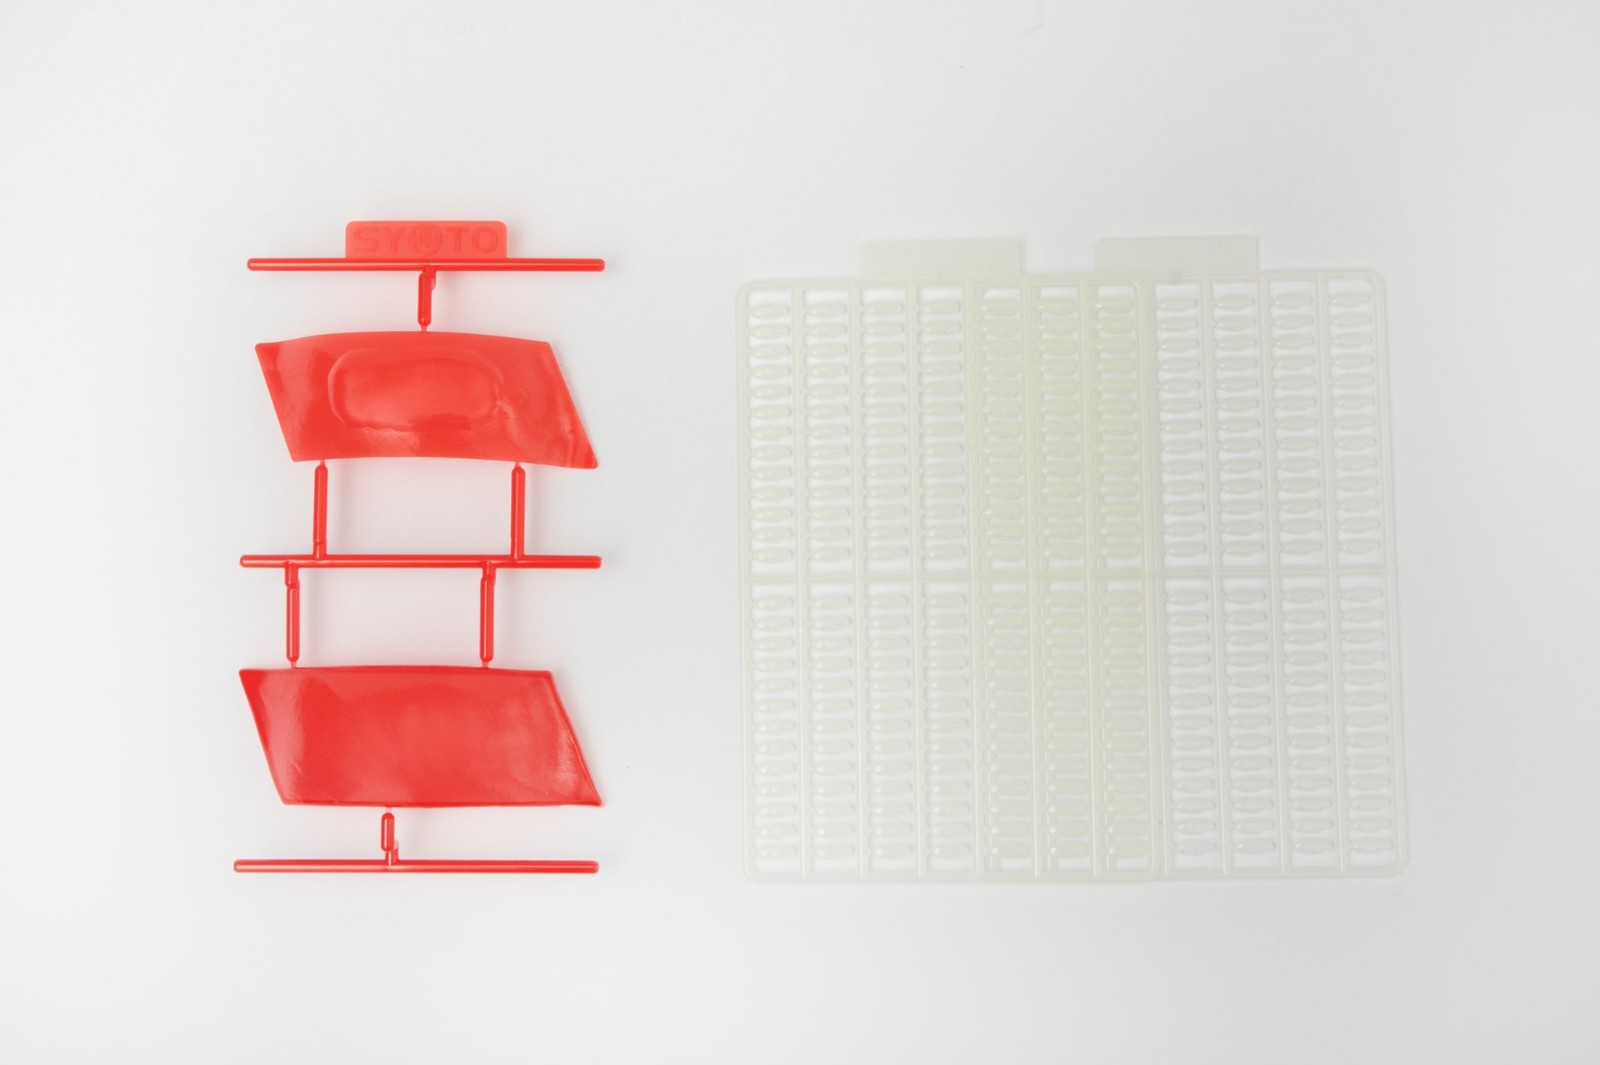 奇葩寿司拼装模型公开 多达364粒米颗颗再现一一拼装